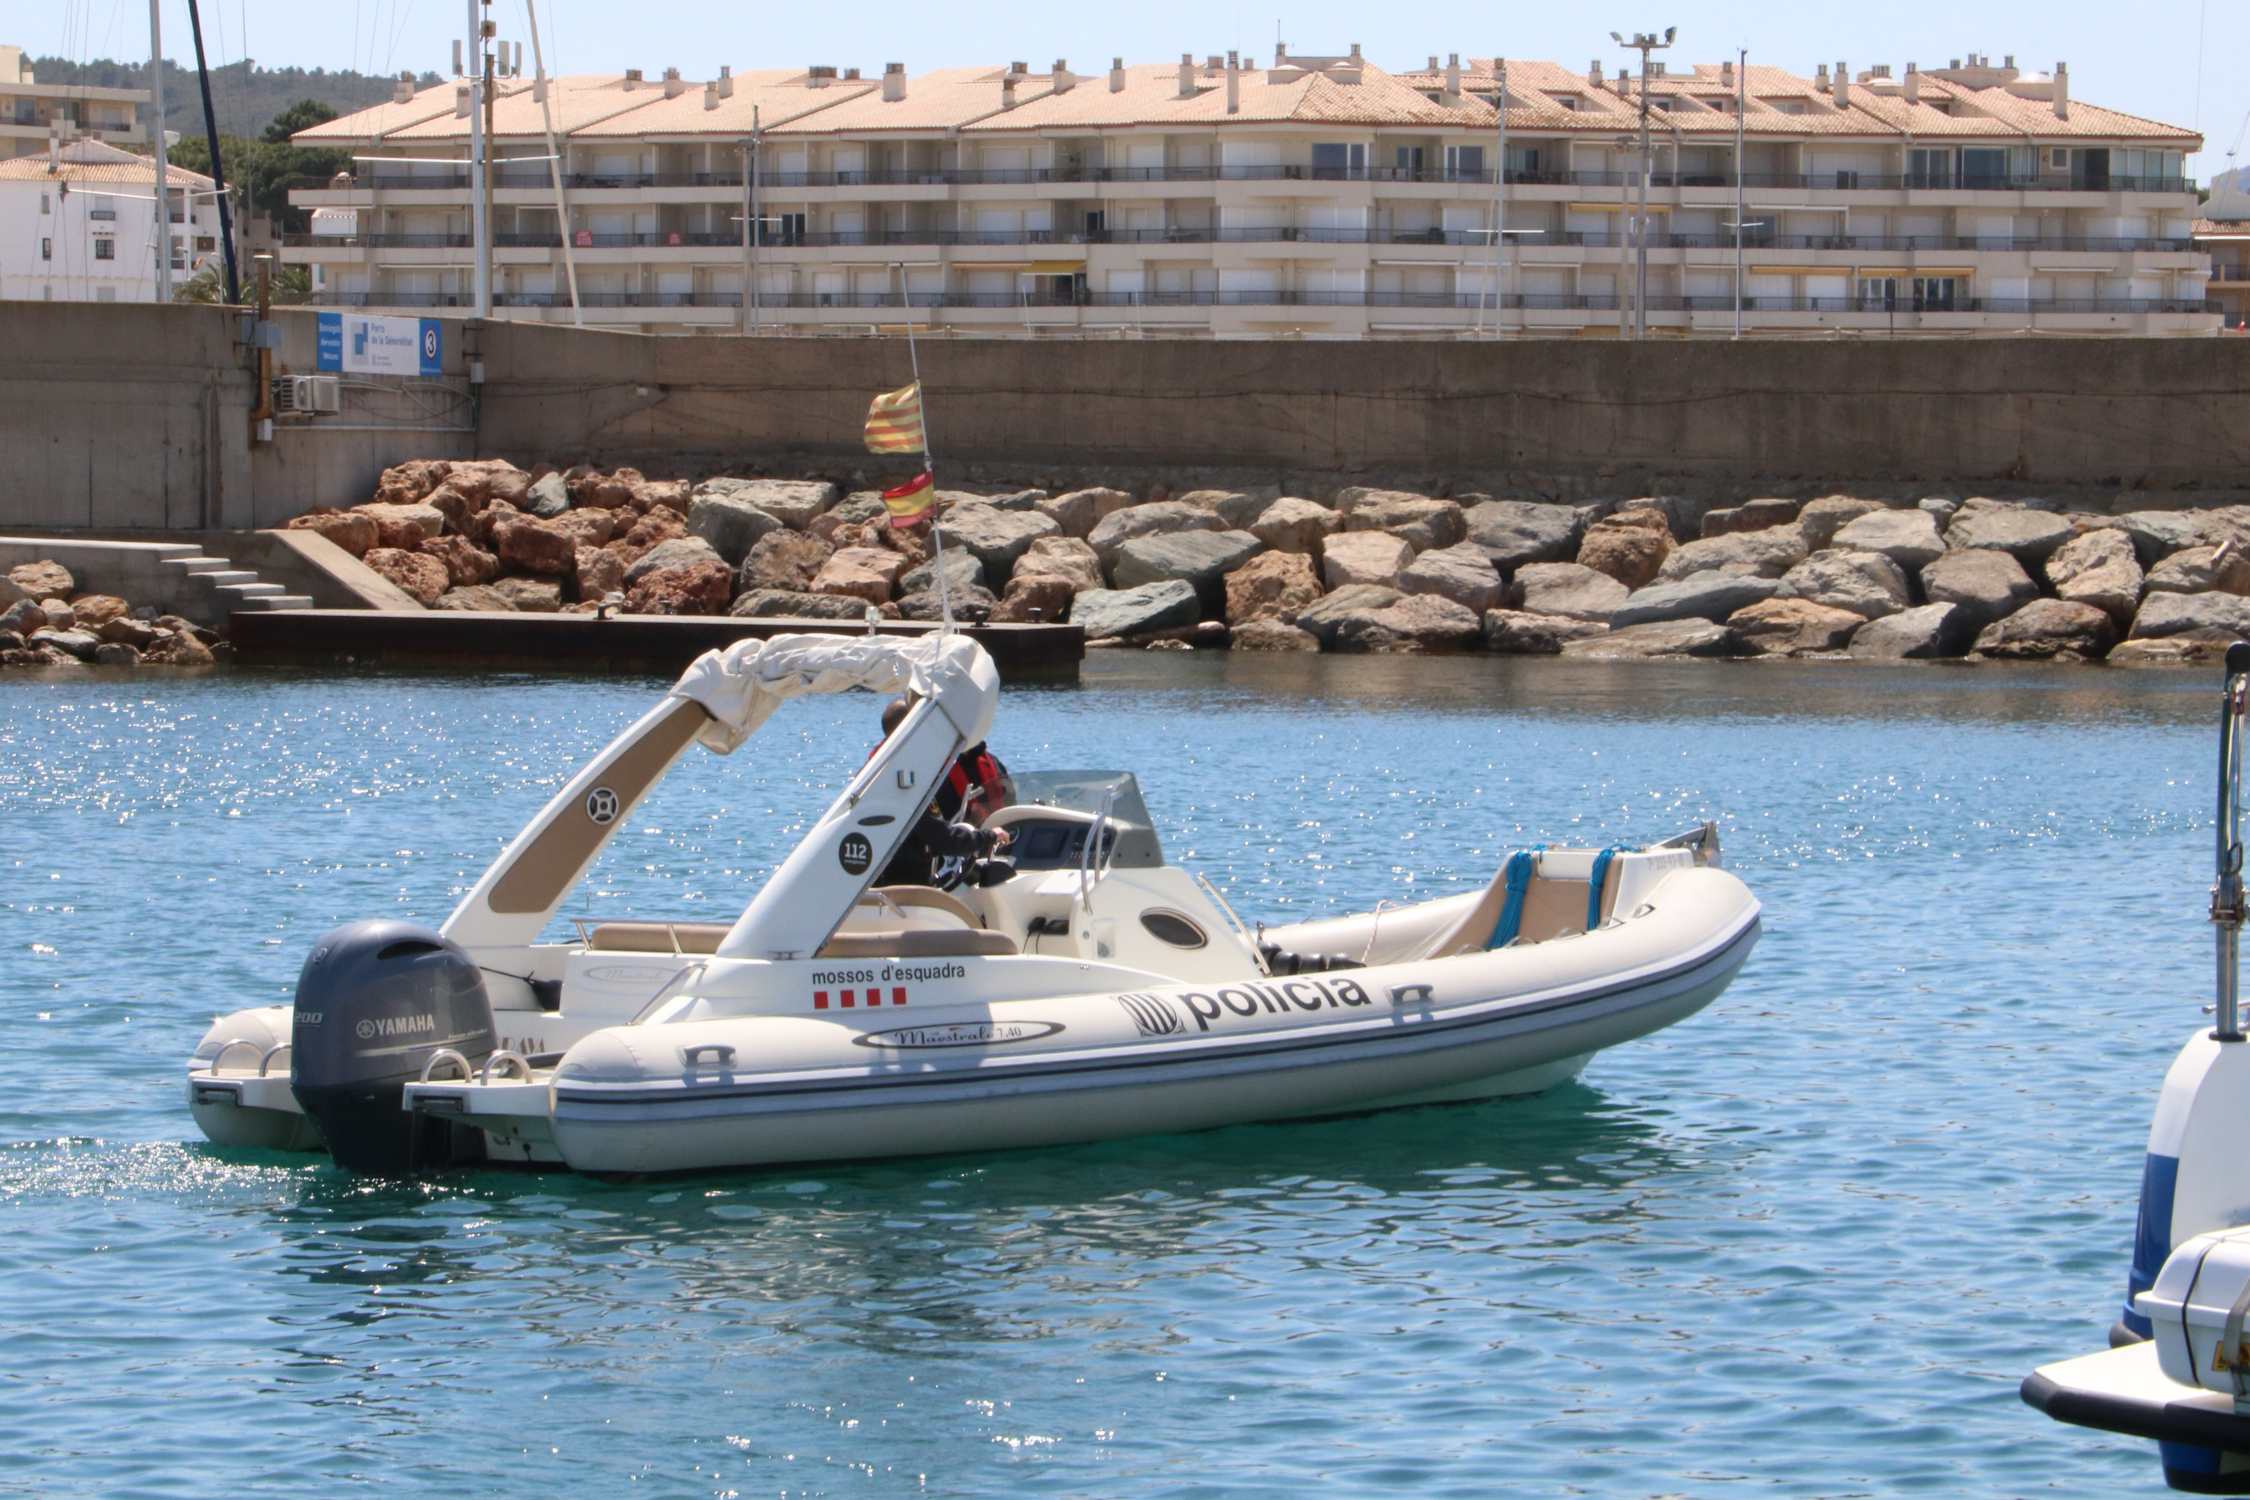 Mossos reaprovecha dos embarcaciones de narcotraficantes para convertirlas en patrulleras